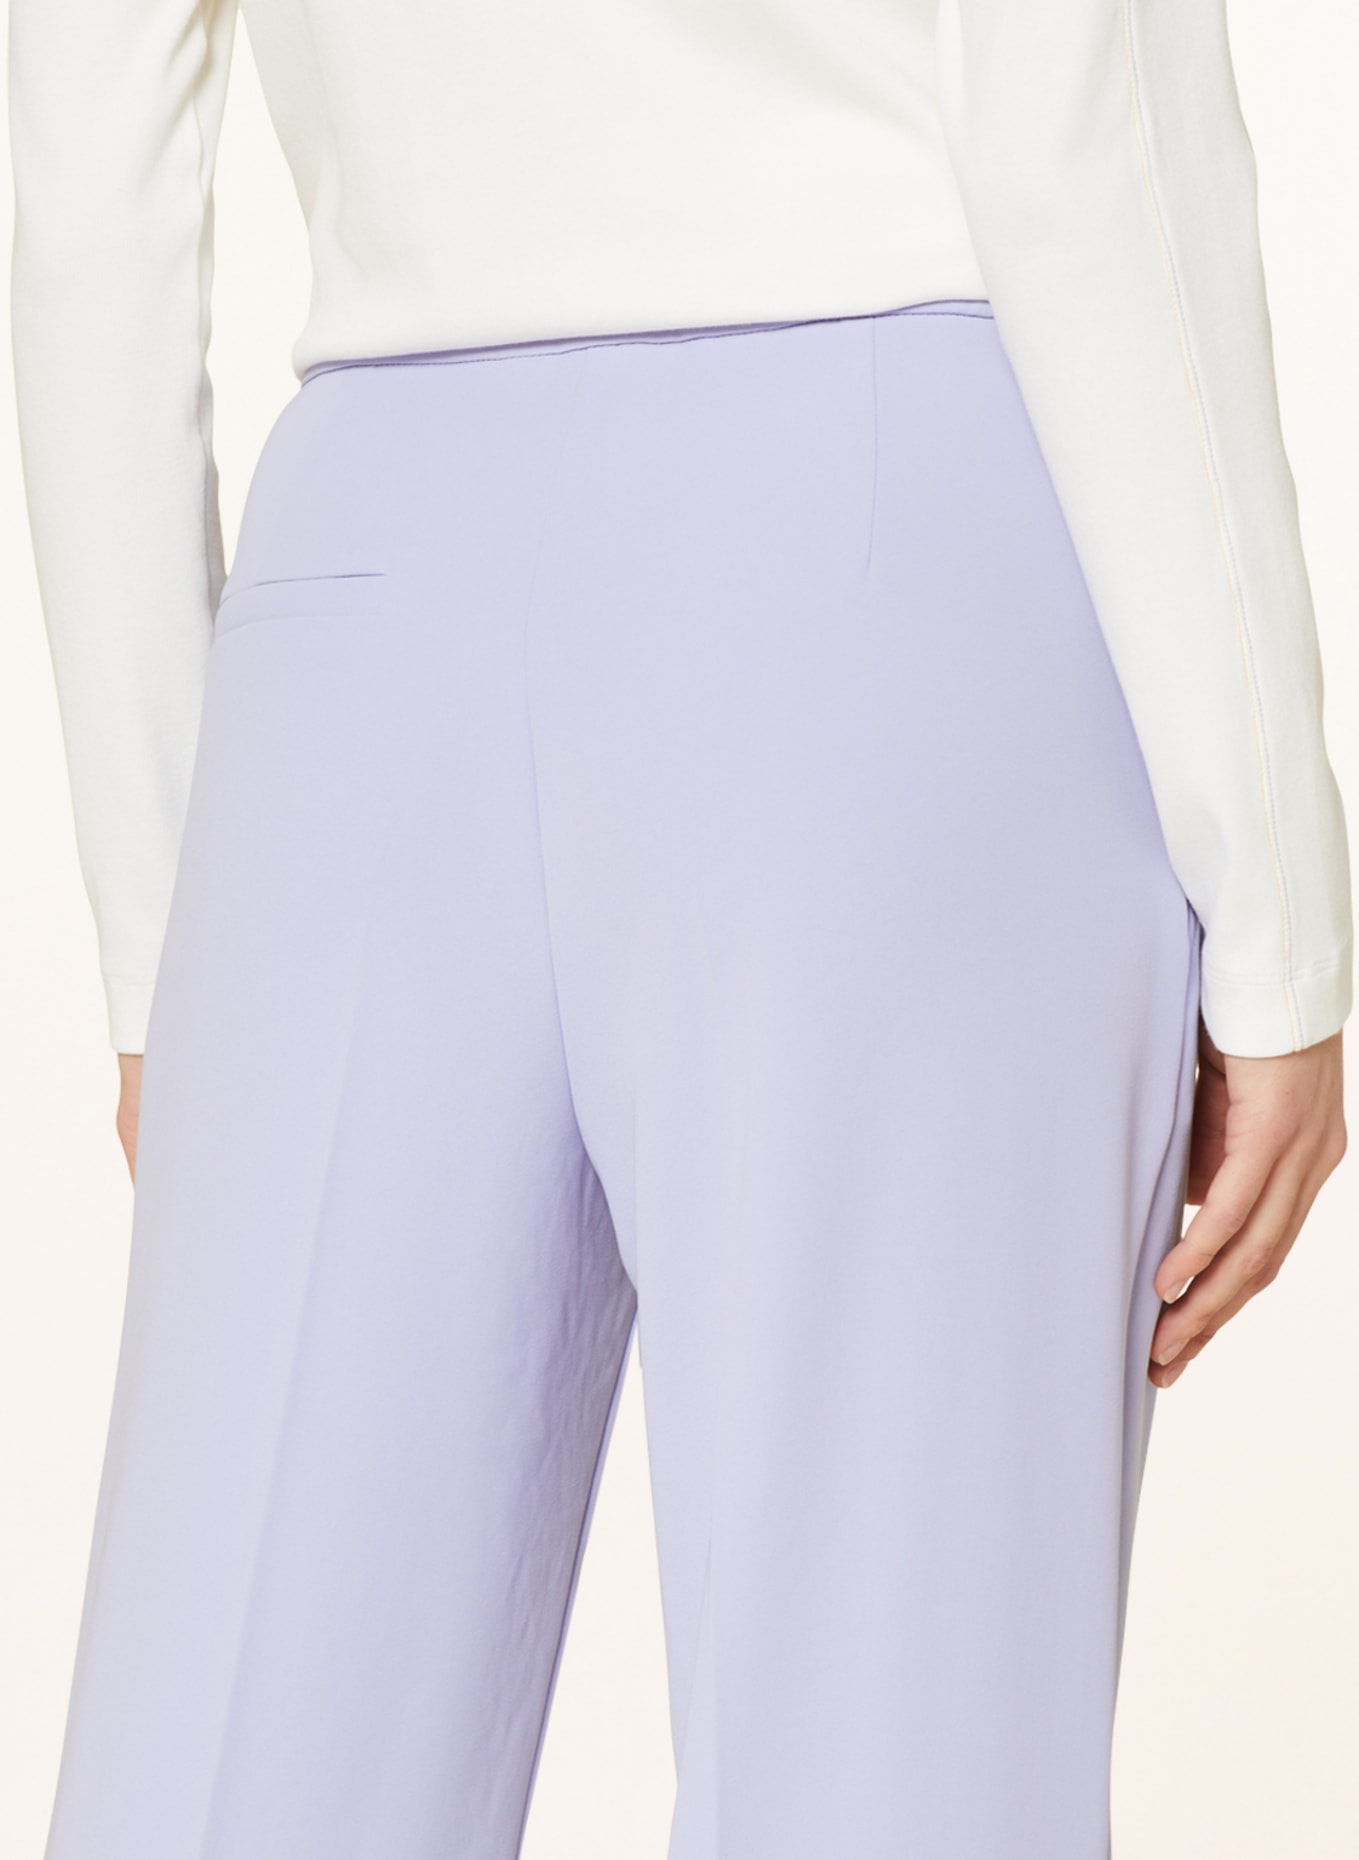 MARC CAIN Wide leg trousers WUKARI, Color: 771 soft violet (Image 5)